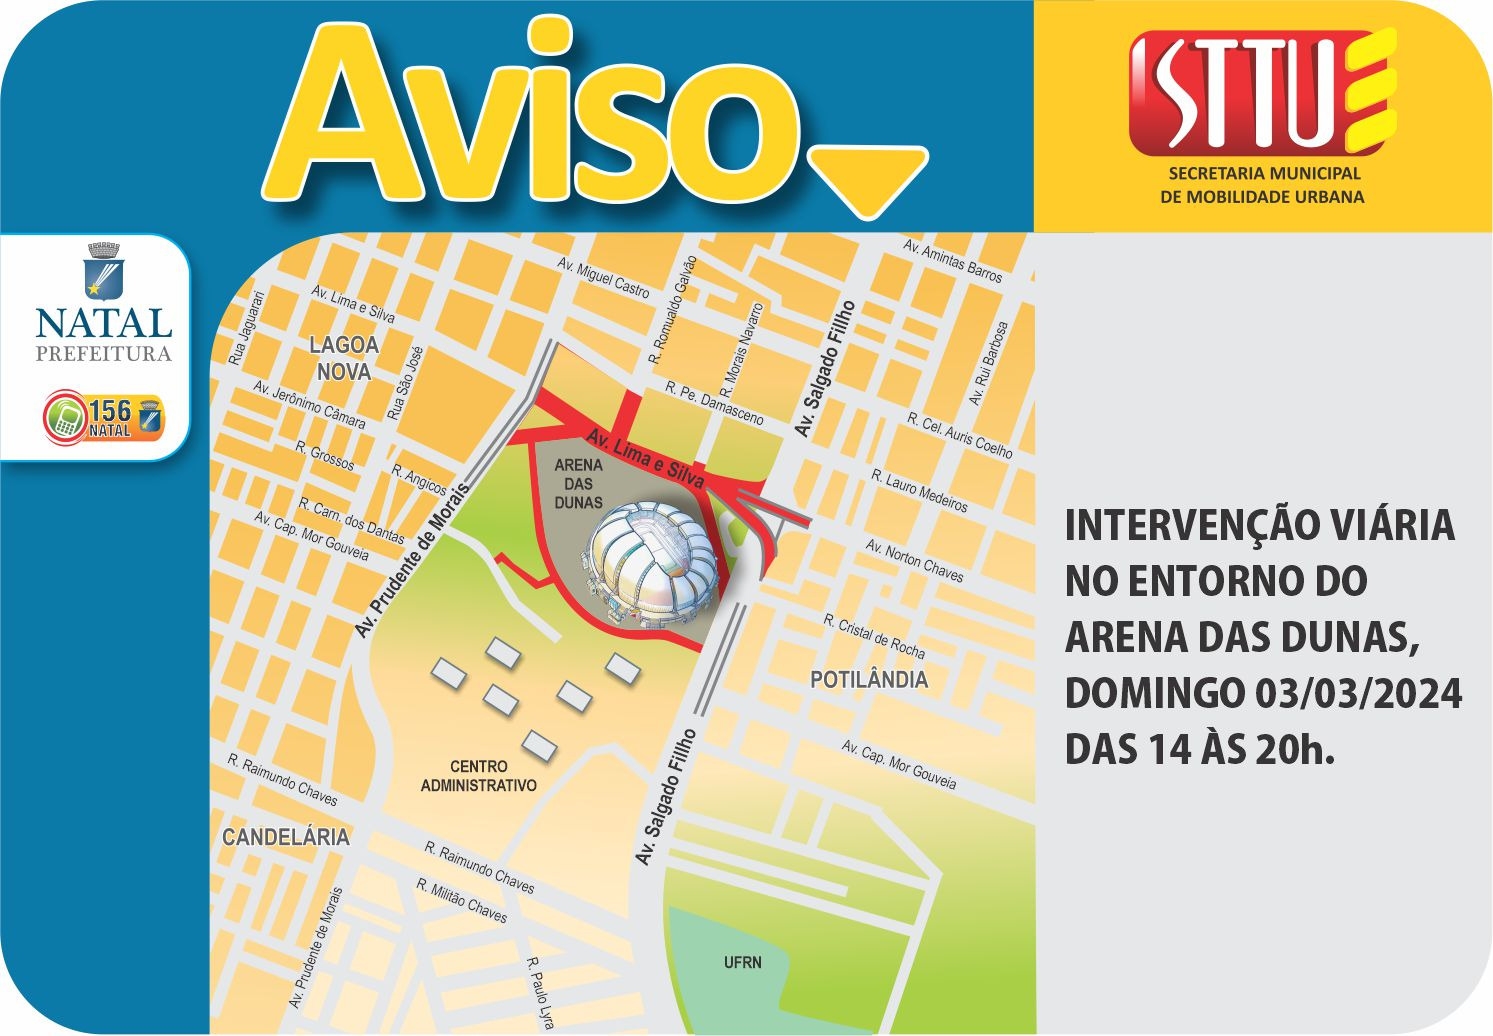 STTU faz alterações no trânsito para clássico entre ABC e América na Arena das Dunas neste domingo